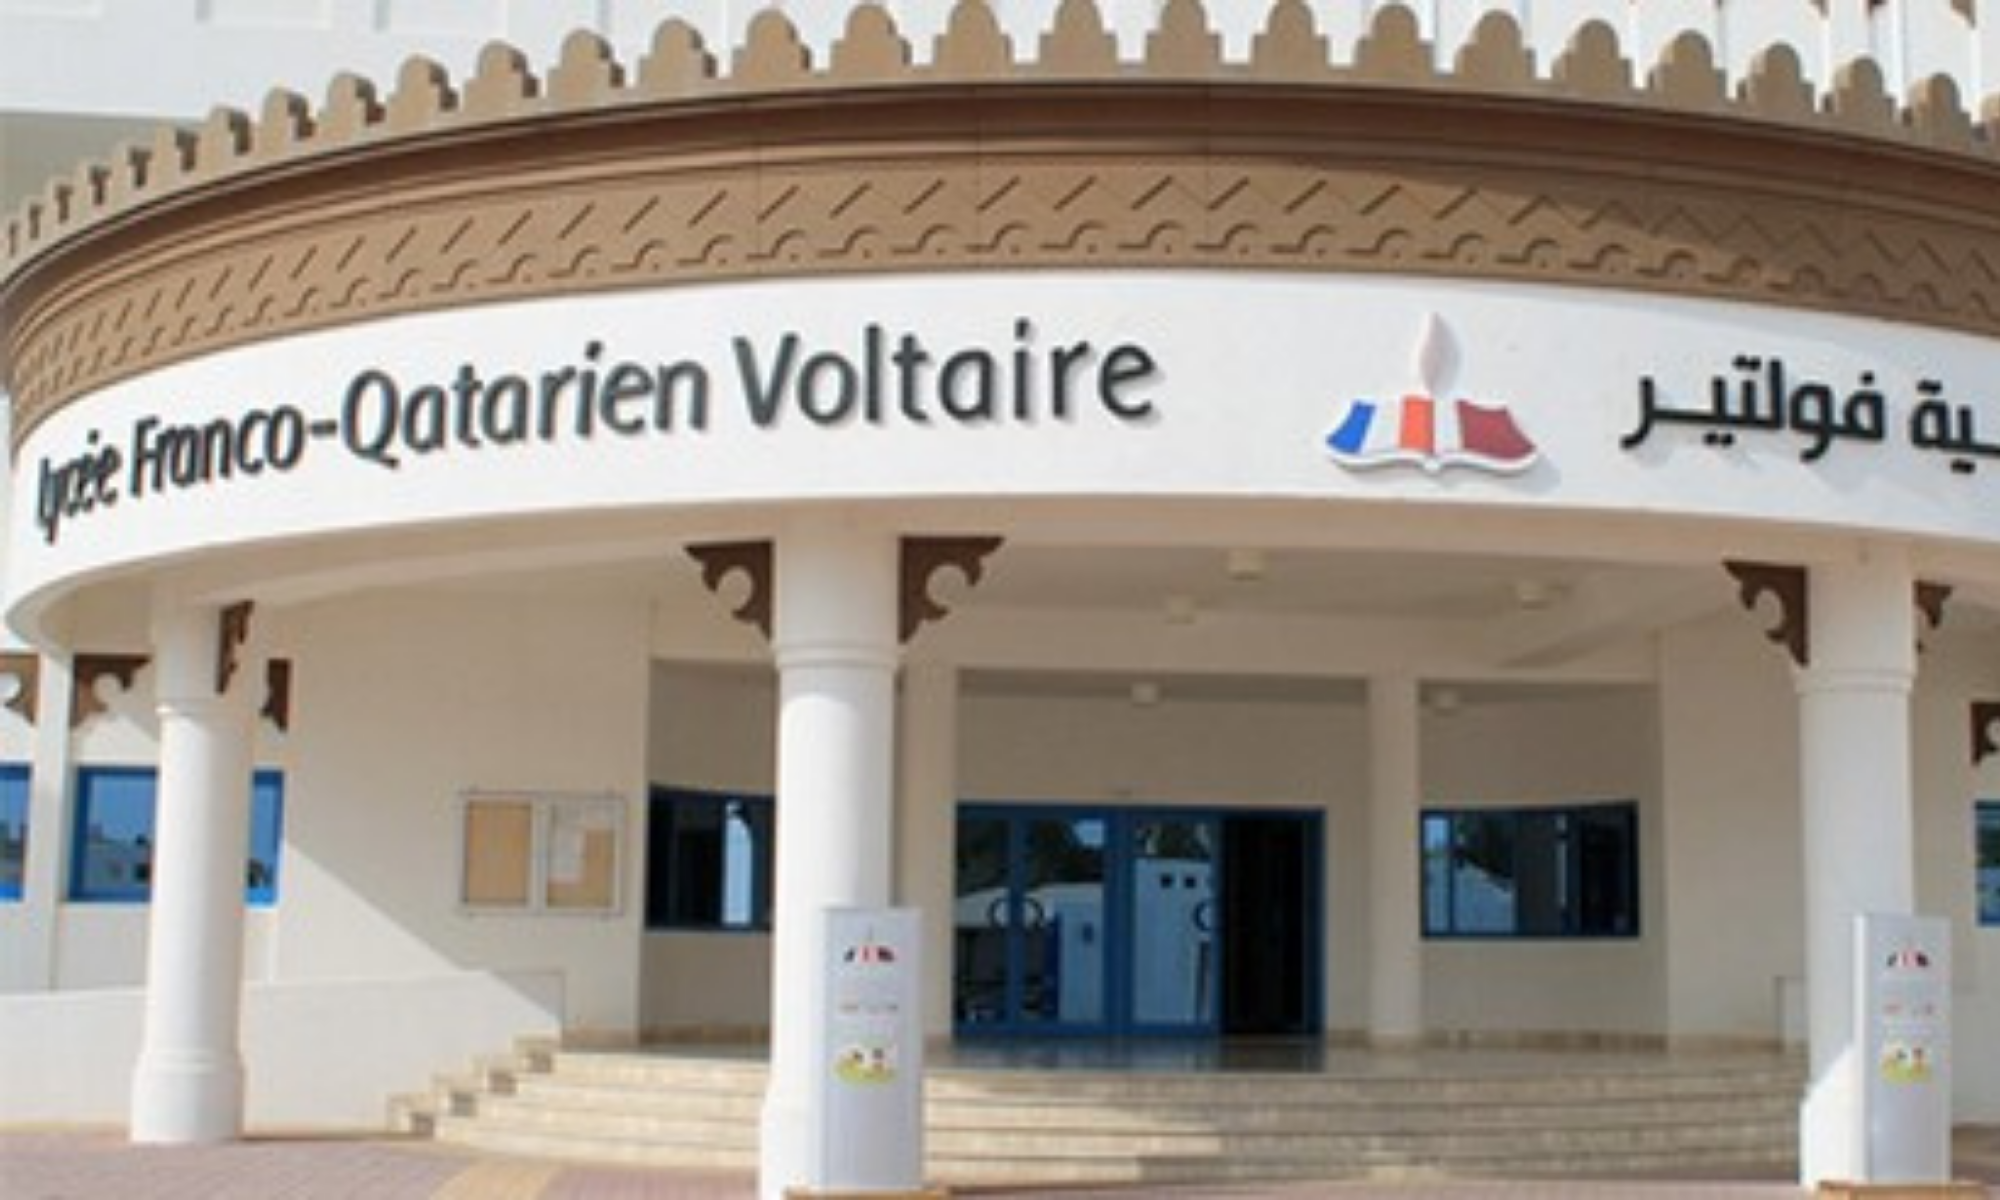 Fournitures scolaires  Lycée Franco-Qatarien Voltaire